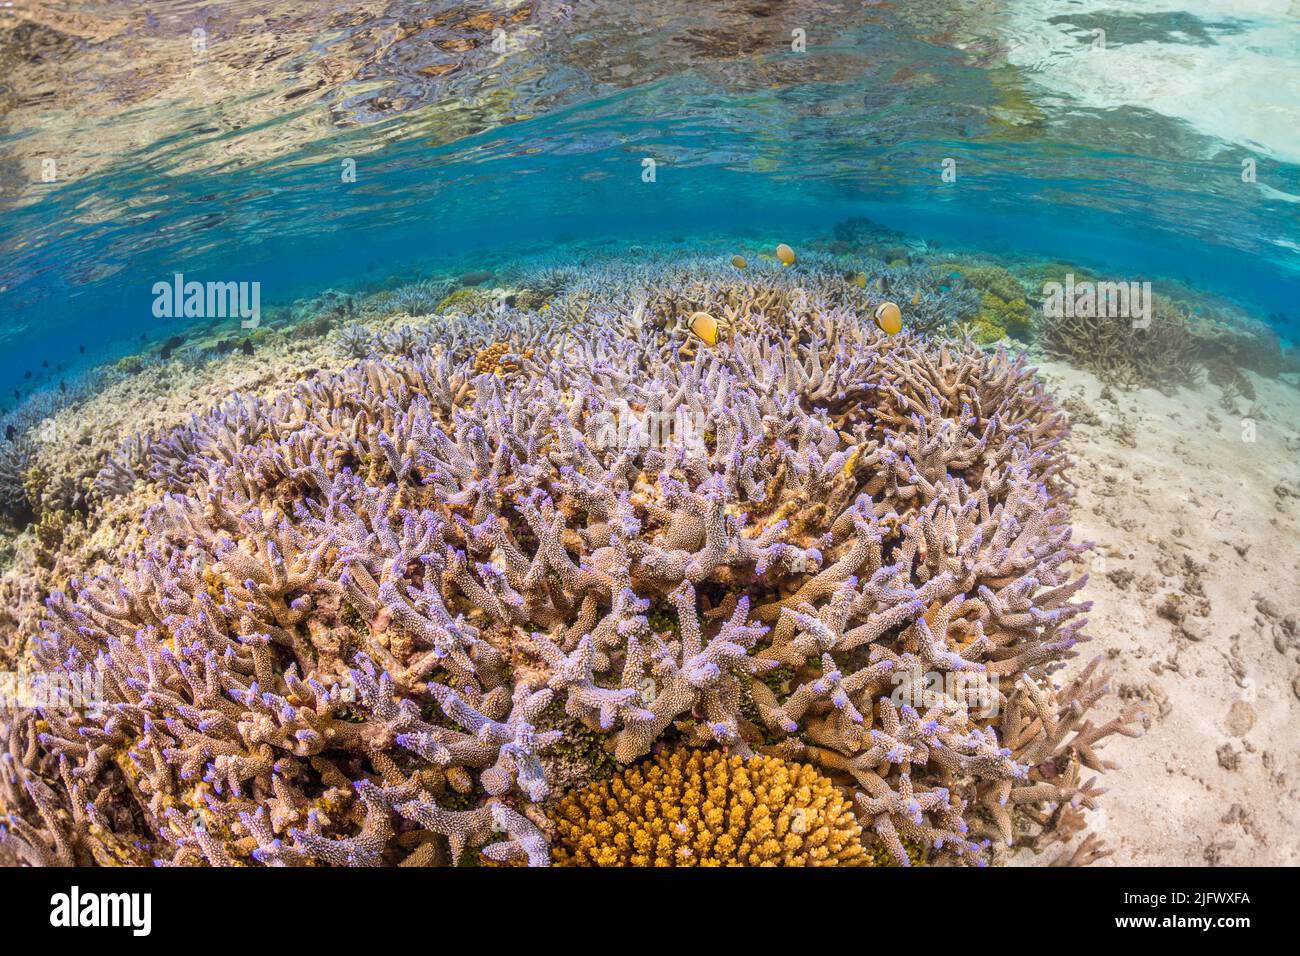 Une scène de récif de corail profond et dur au large de l'île de Kadavu, Fidji. Banque D'Images